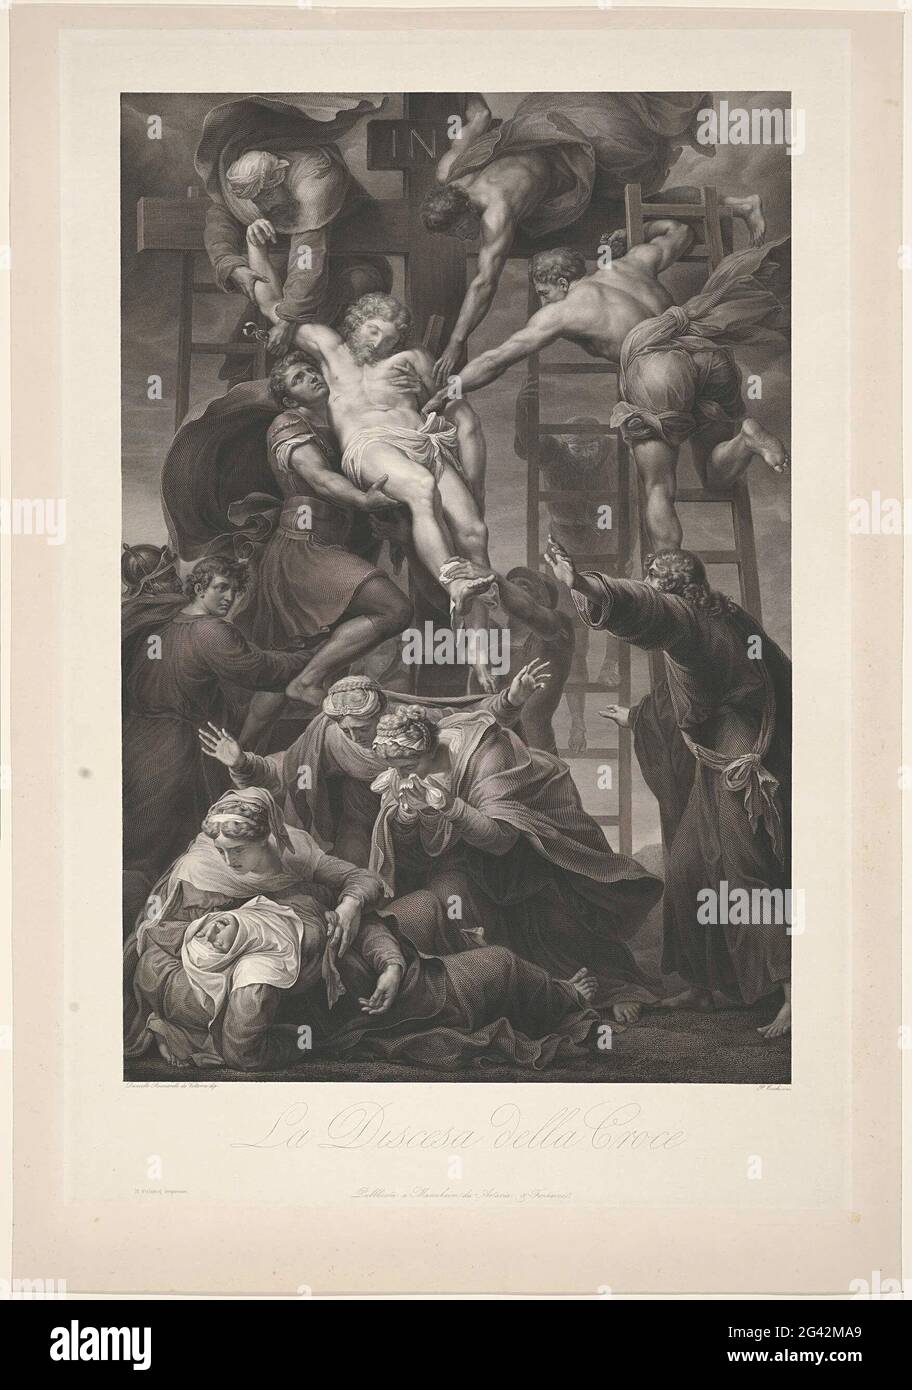 Die Kreuzung; La Discesa della Croce. Der Leib Christi wird von einer Gruppe von Menschen auf Leitern vom Kreuz genommen. Die Maria trauert am Fuße des Kreuzes. Titel in italienischer Sprache in Undermarge. Stockfoto